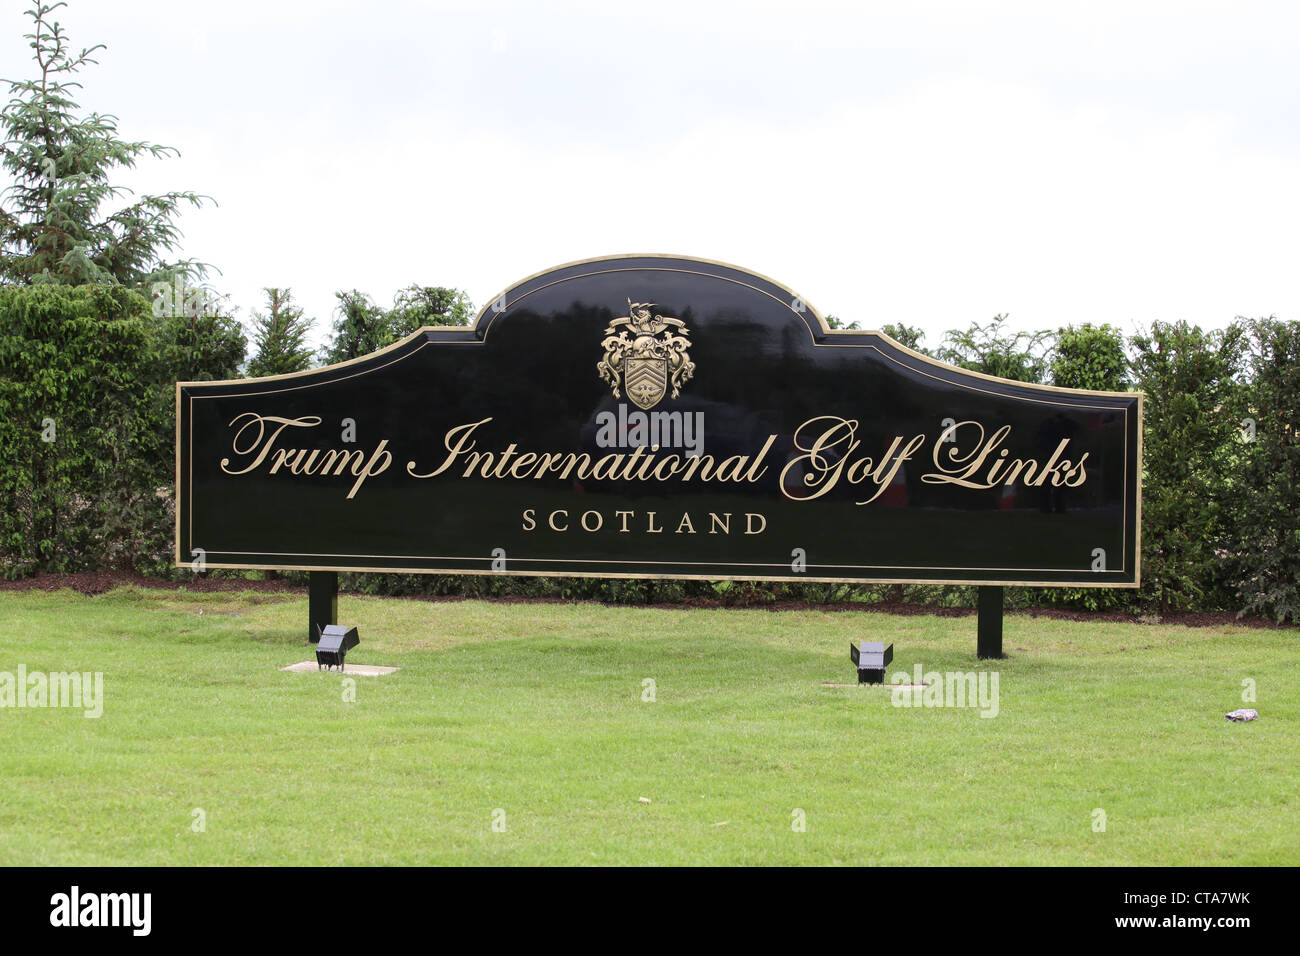 Inscrivez-vous à la nouvelle Trump International Golf Links cours dans l'Aberdeenshire, Ecosse, Royaume-Uni. L'homme d'affaires Donald Trump. Banque D'Images